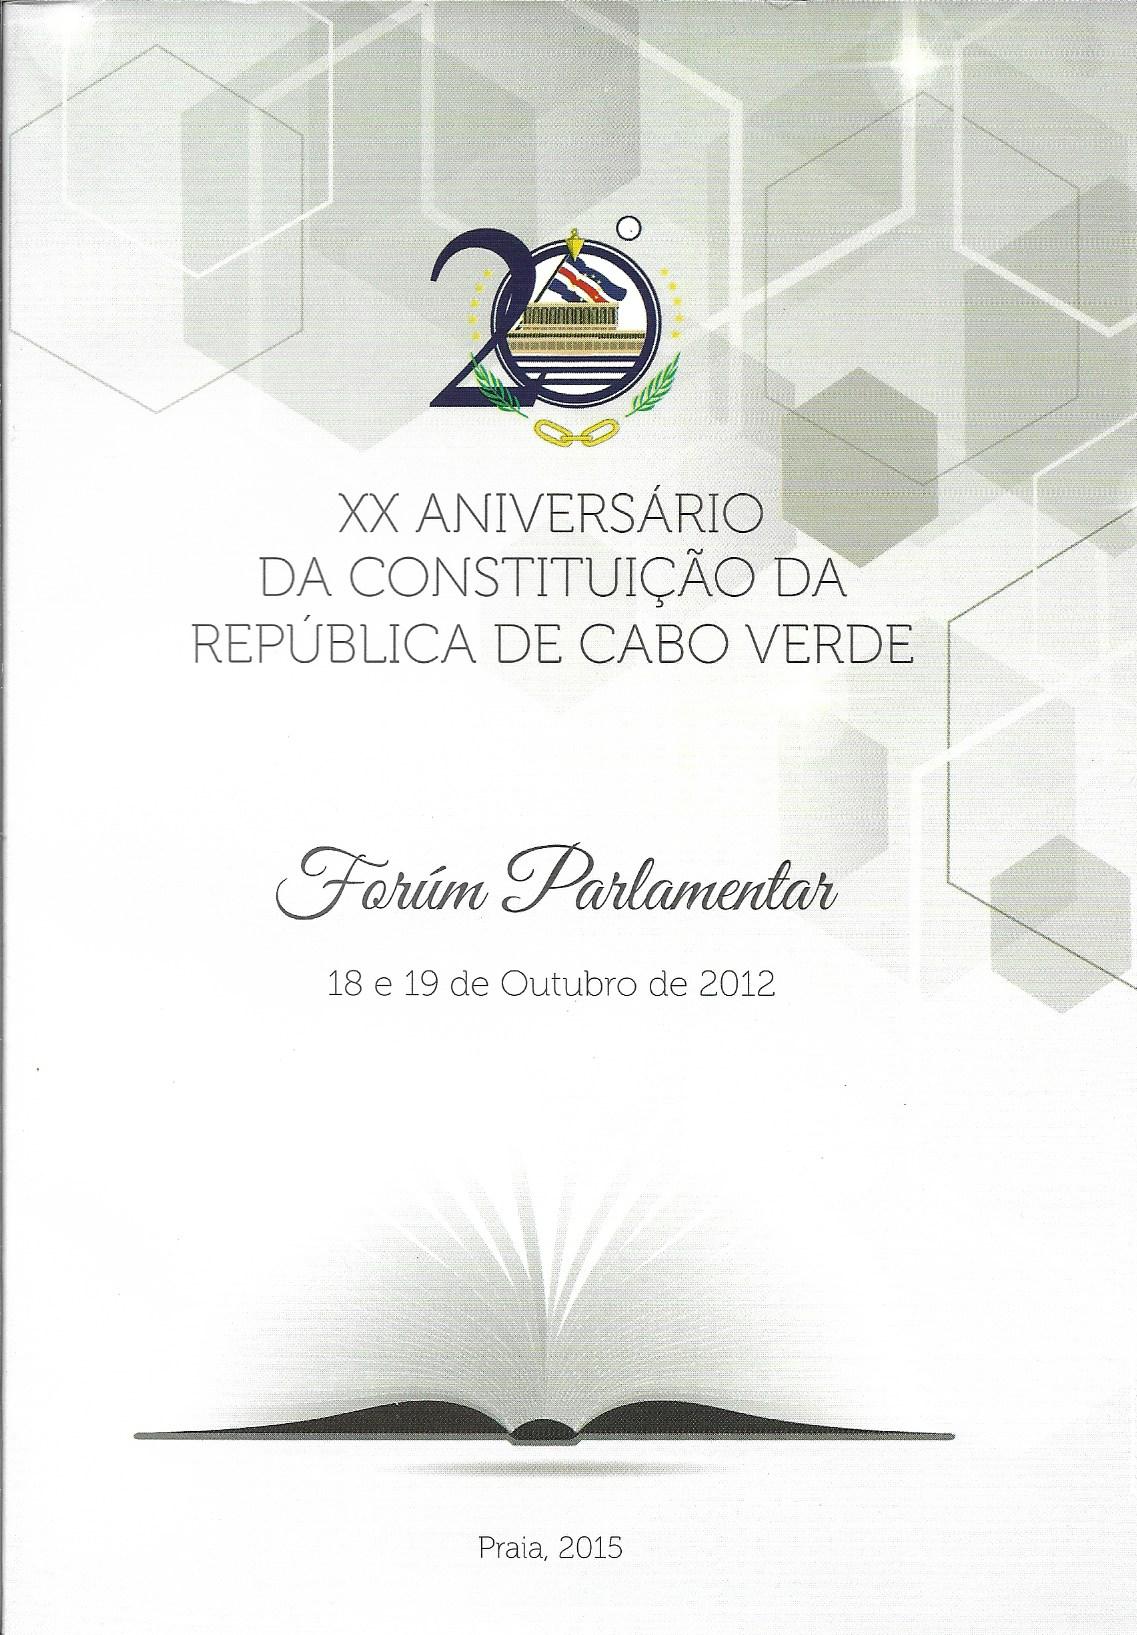 Fórum Parlamentar Sobre o XX Aniversário da Constituição da República de Cabo Verde